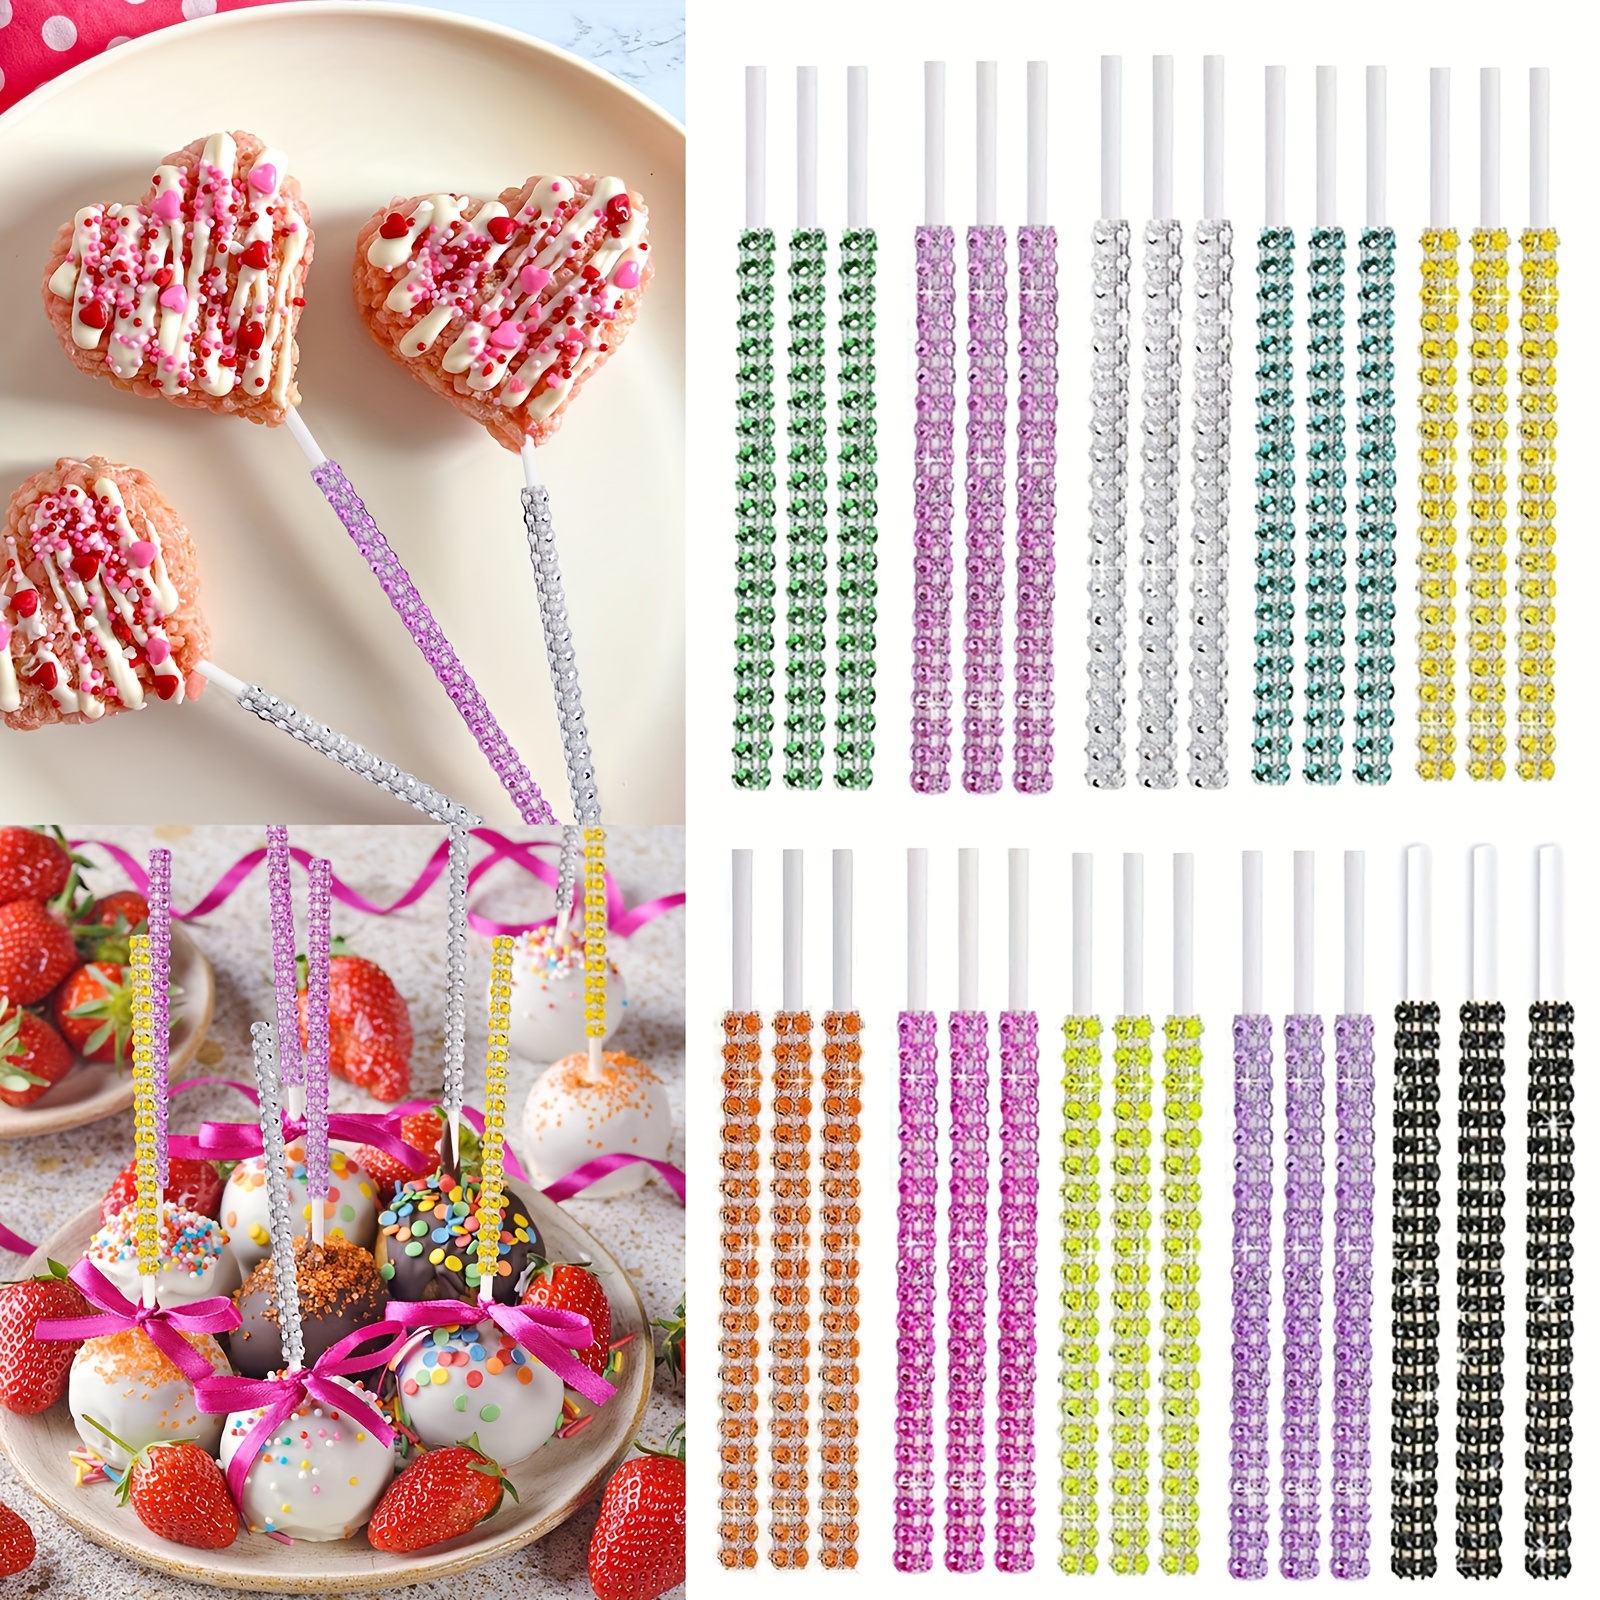 BLING Candy Cane Straw Topper | Straw Buddy | Straw Charm | Straw Decoration